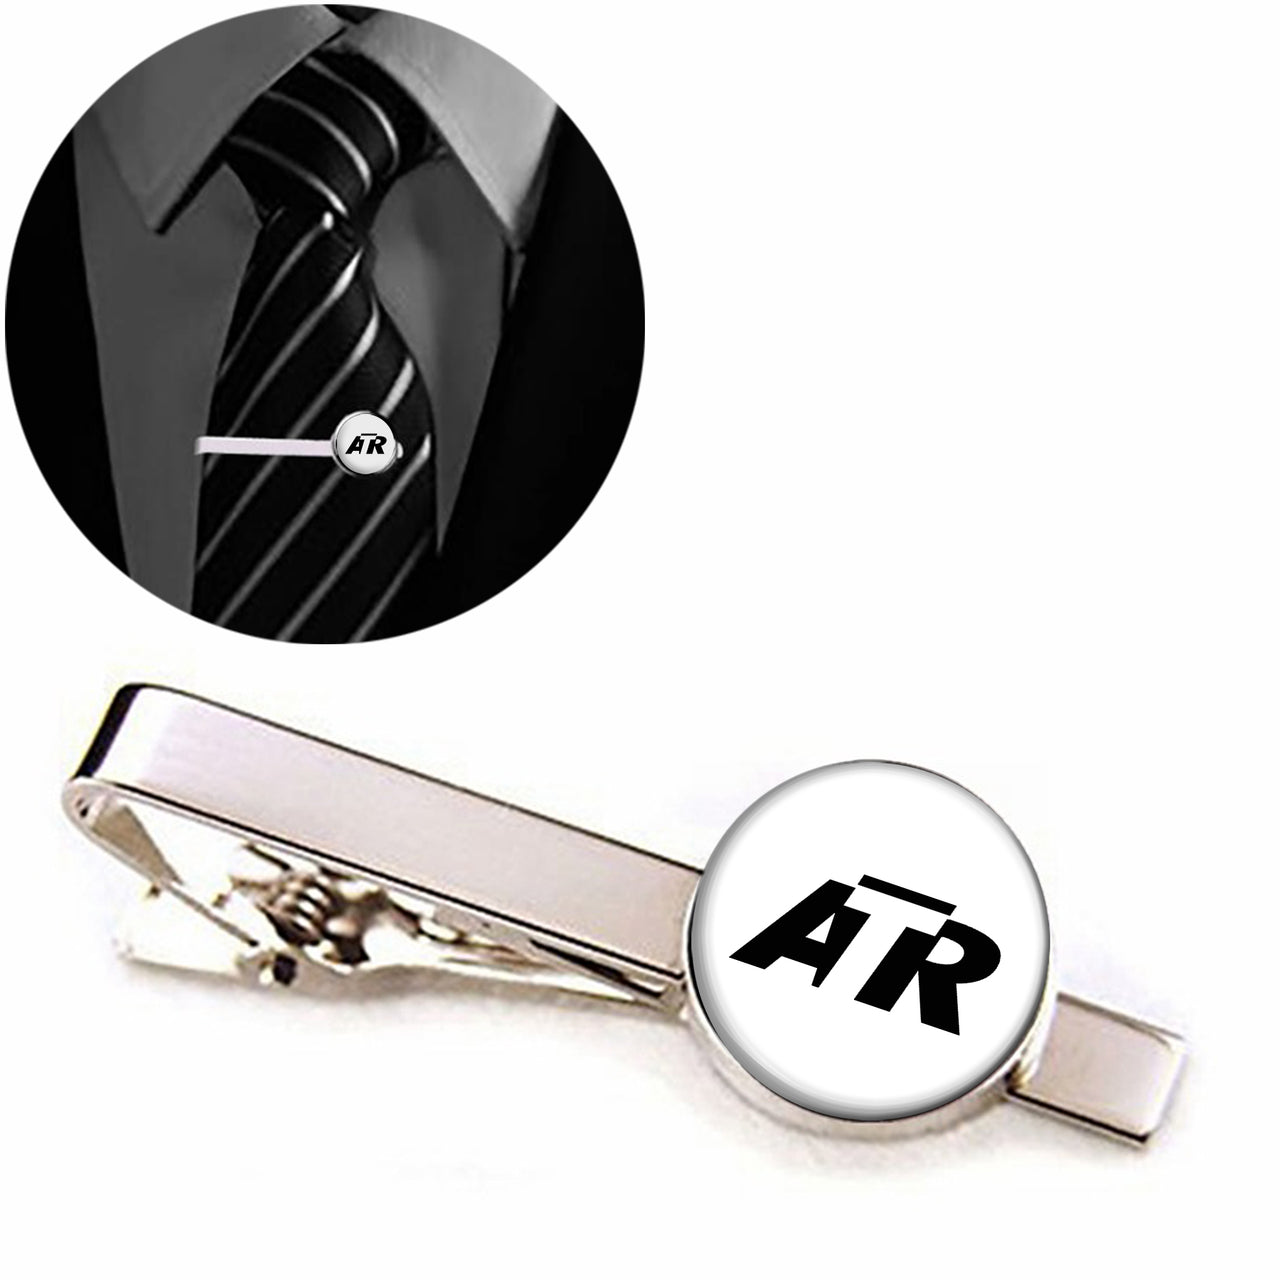 ATR & Text Designed Tie Clips